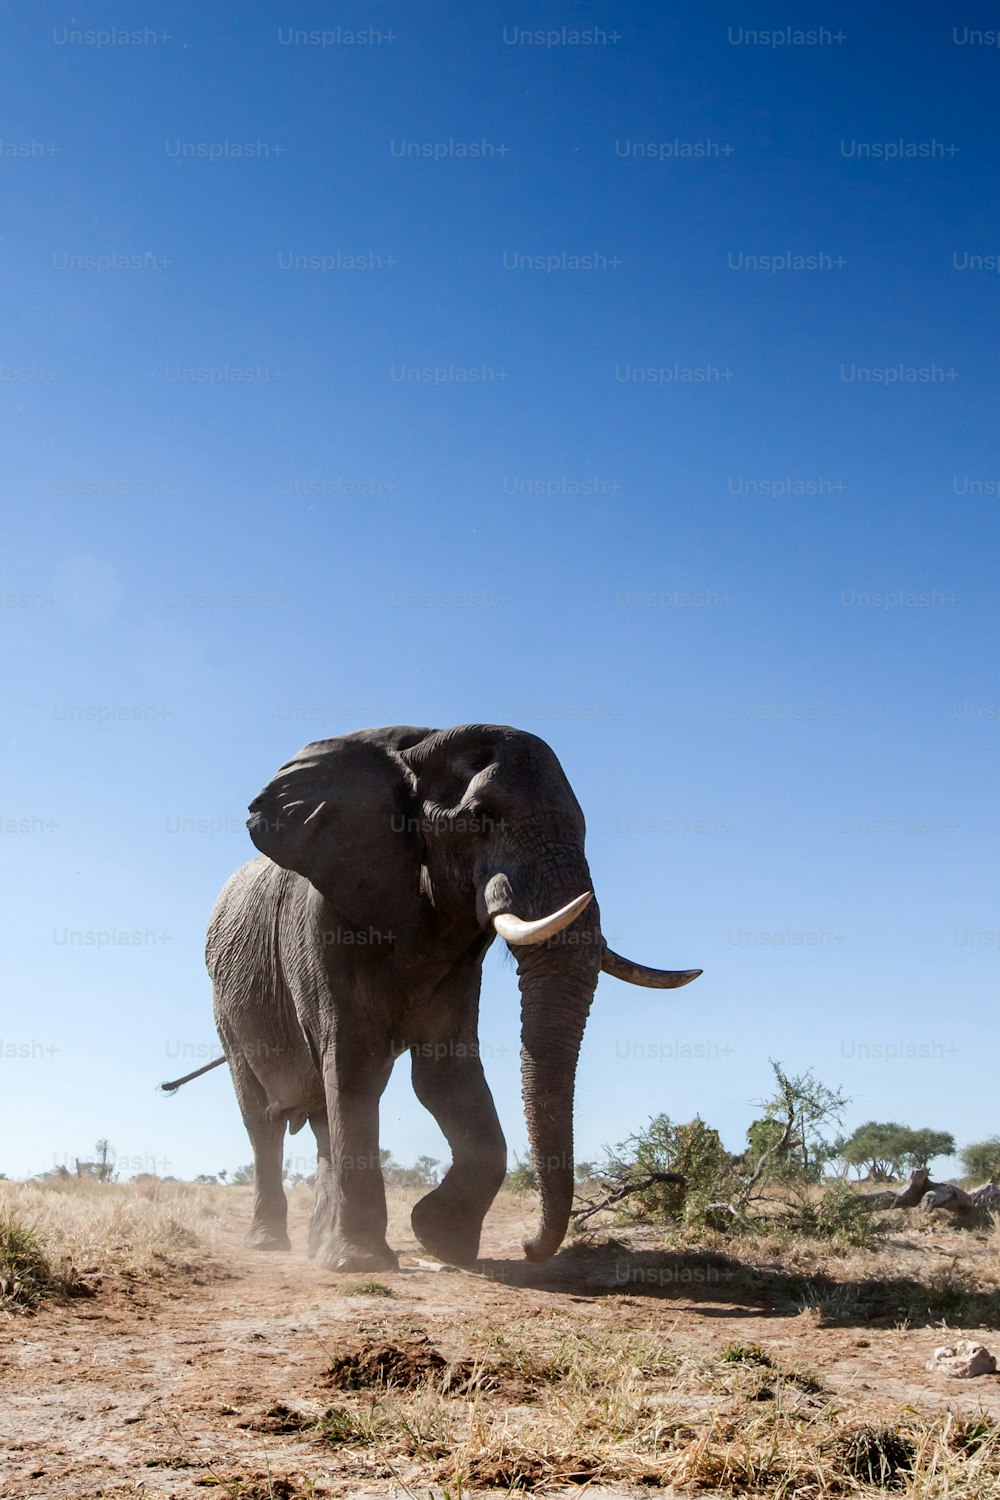 덤불을 걷는 코끼리